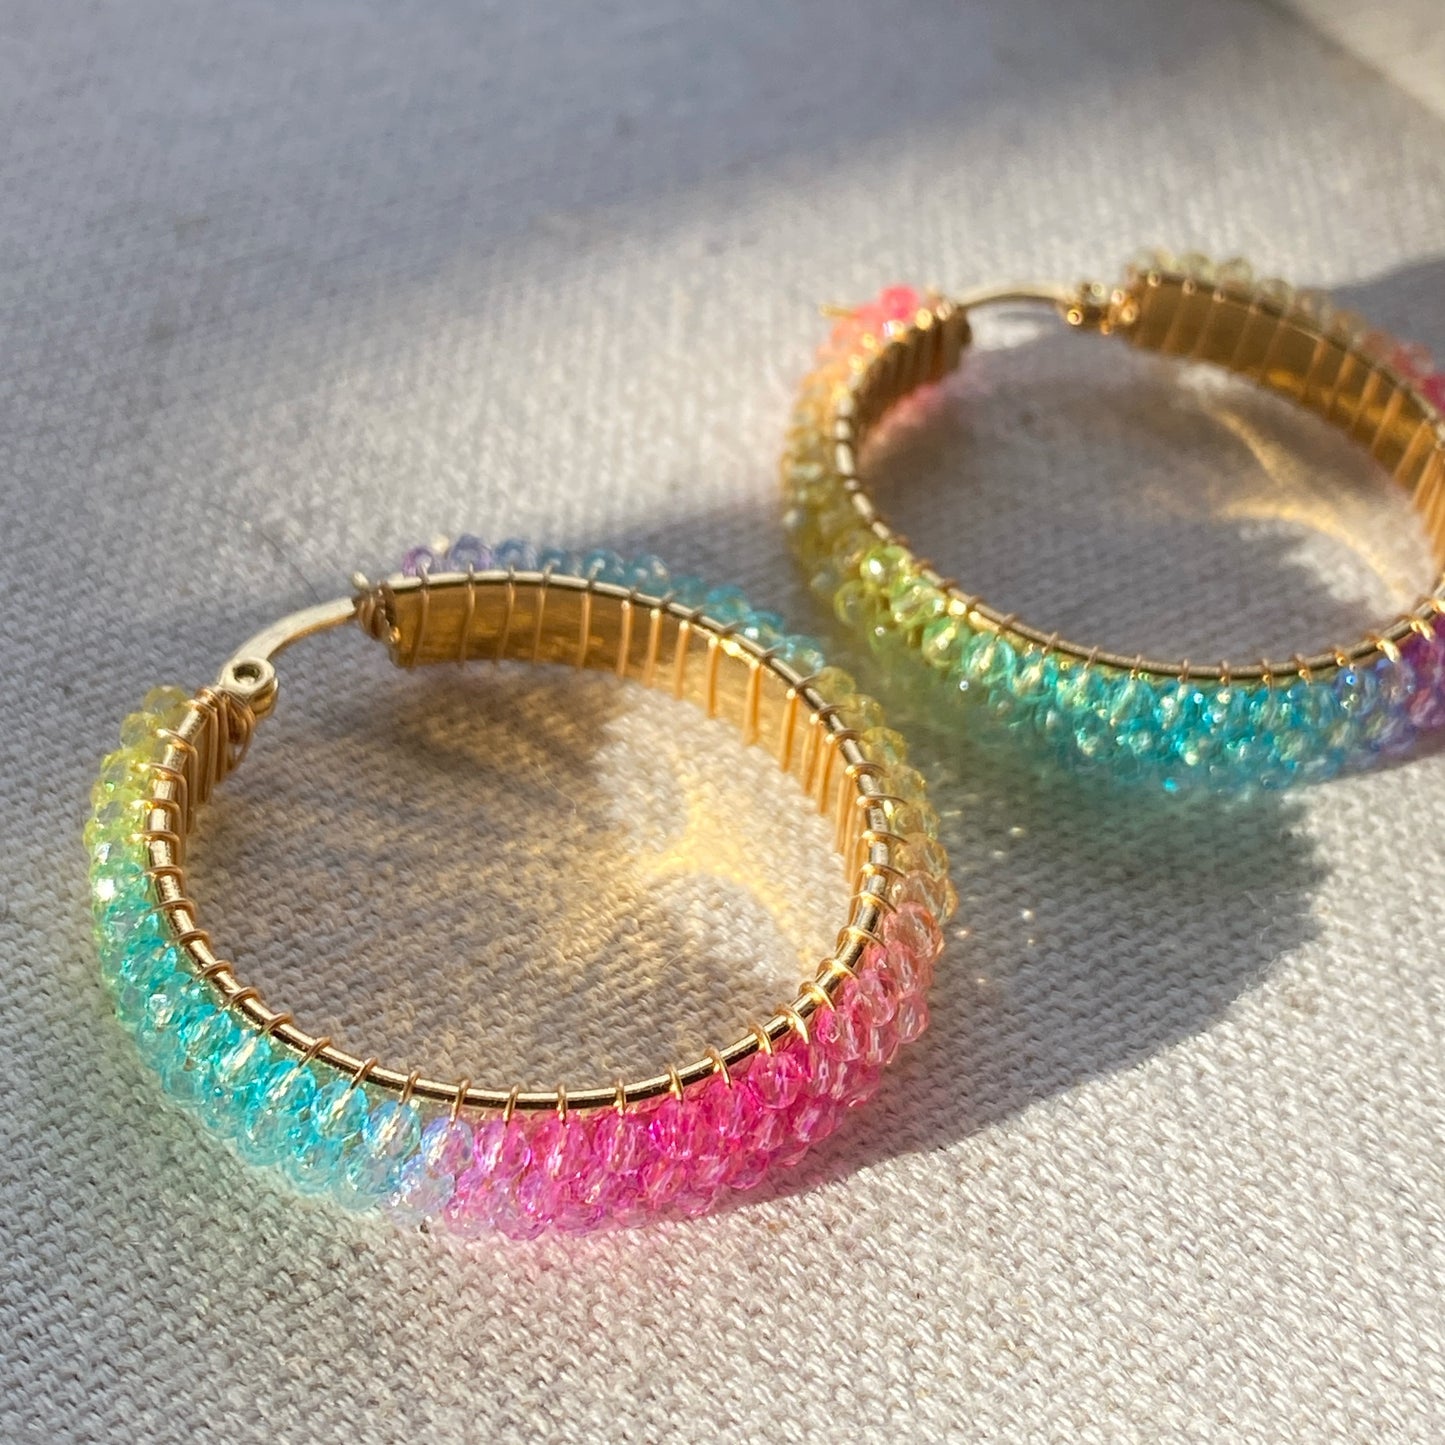 Beaded Rainbow Hoop Earrings Gold Stainless Steel Bright Colors